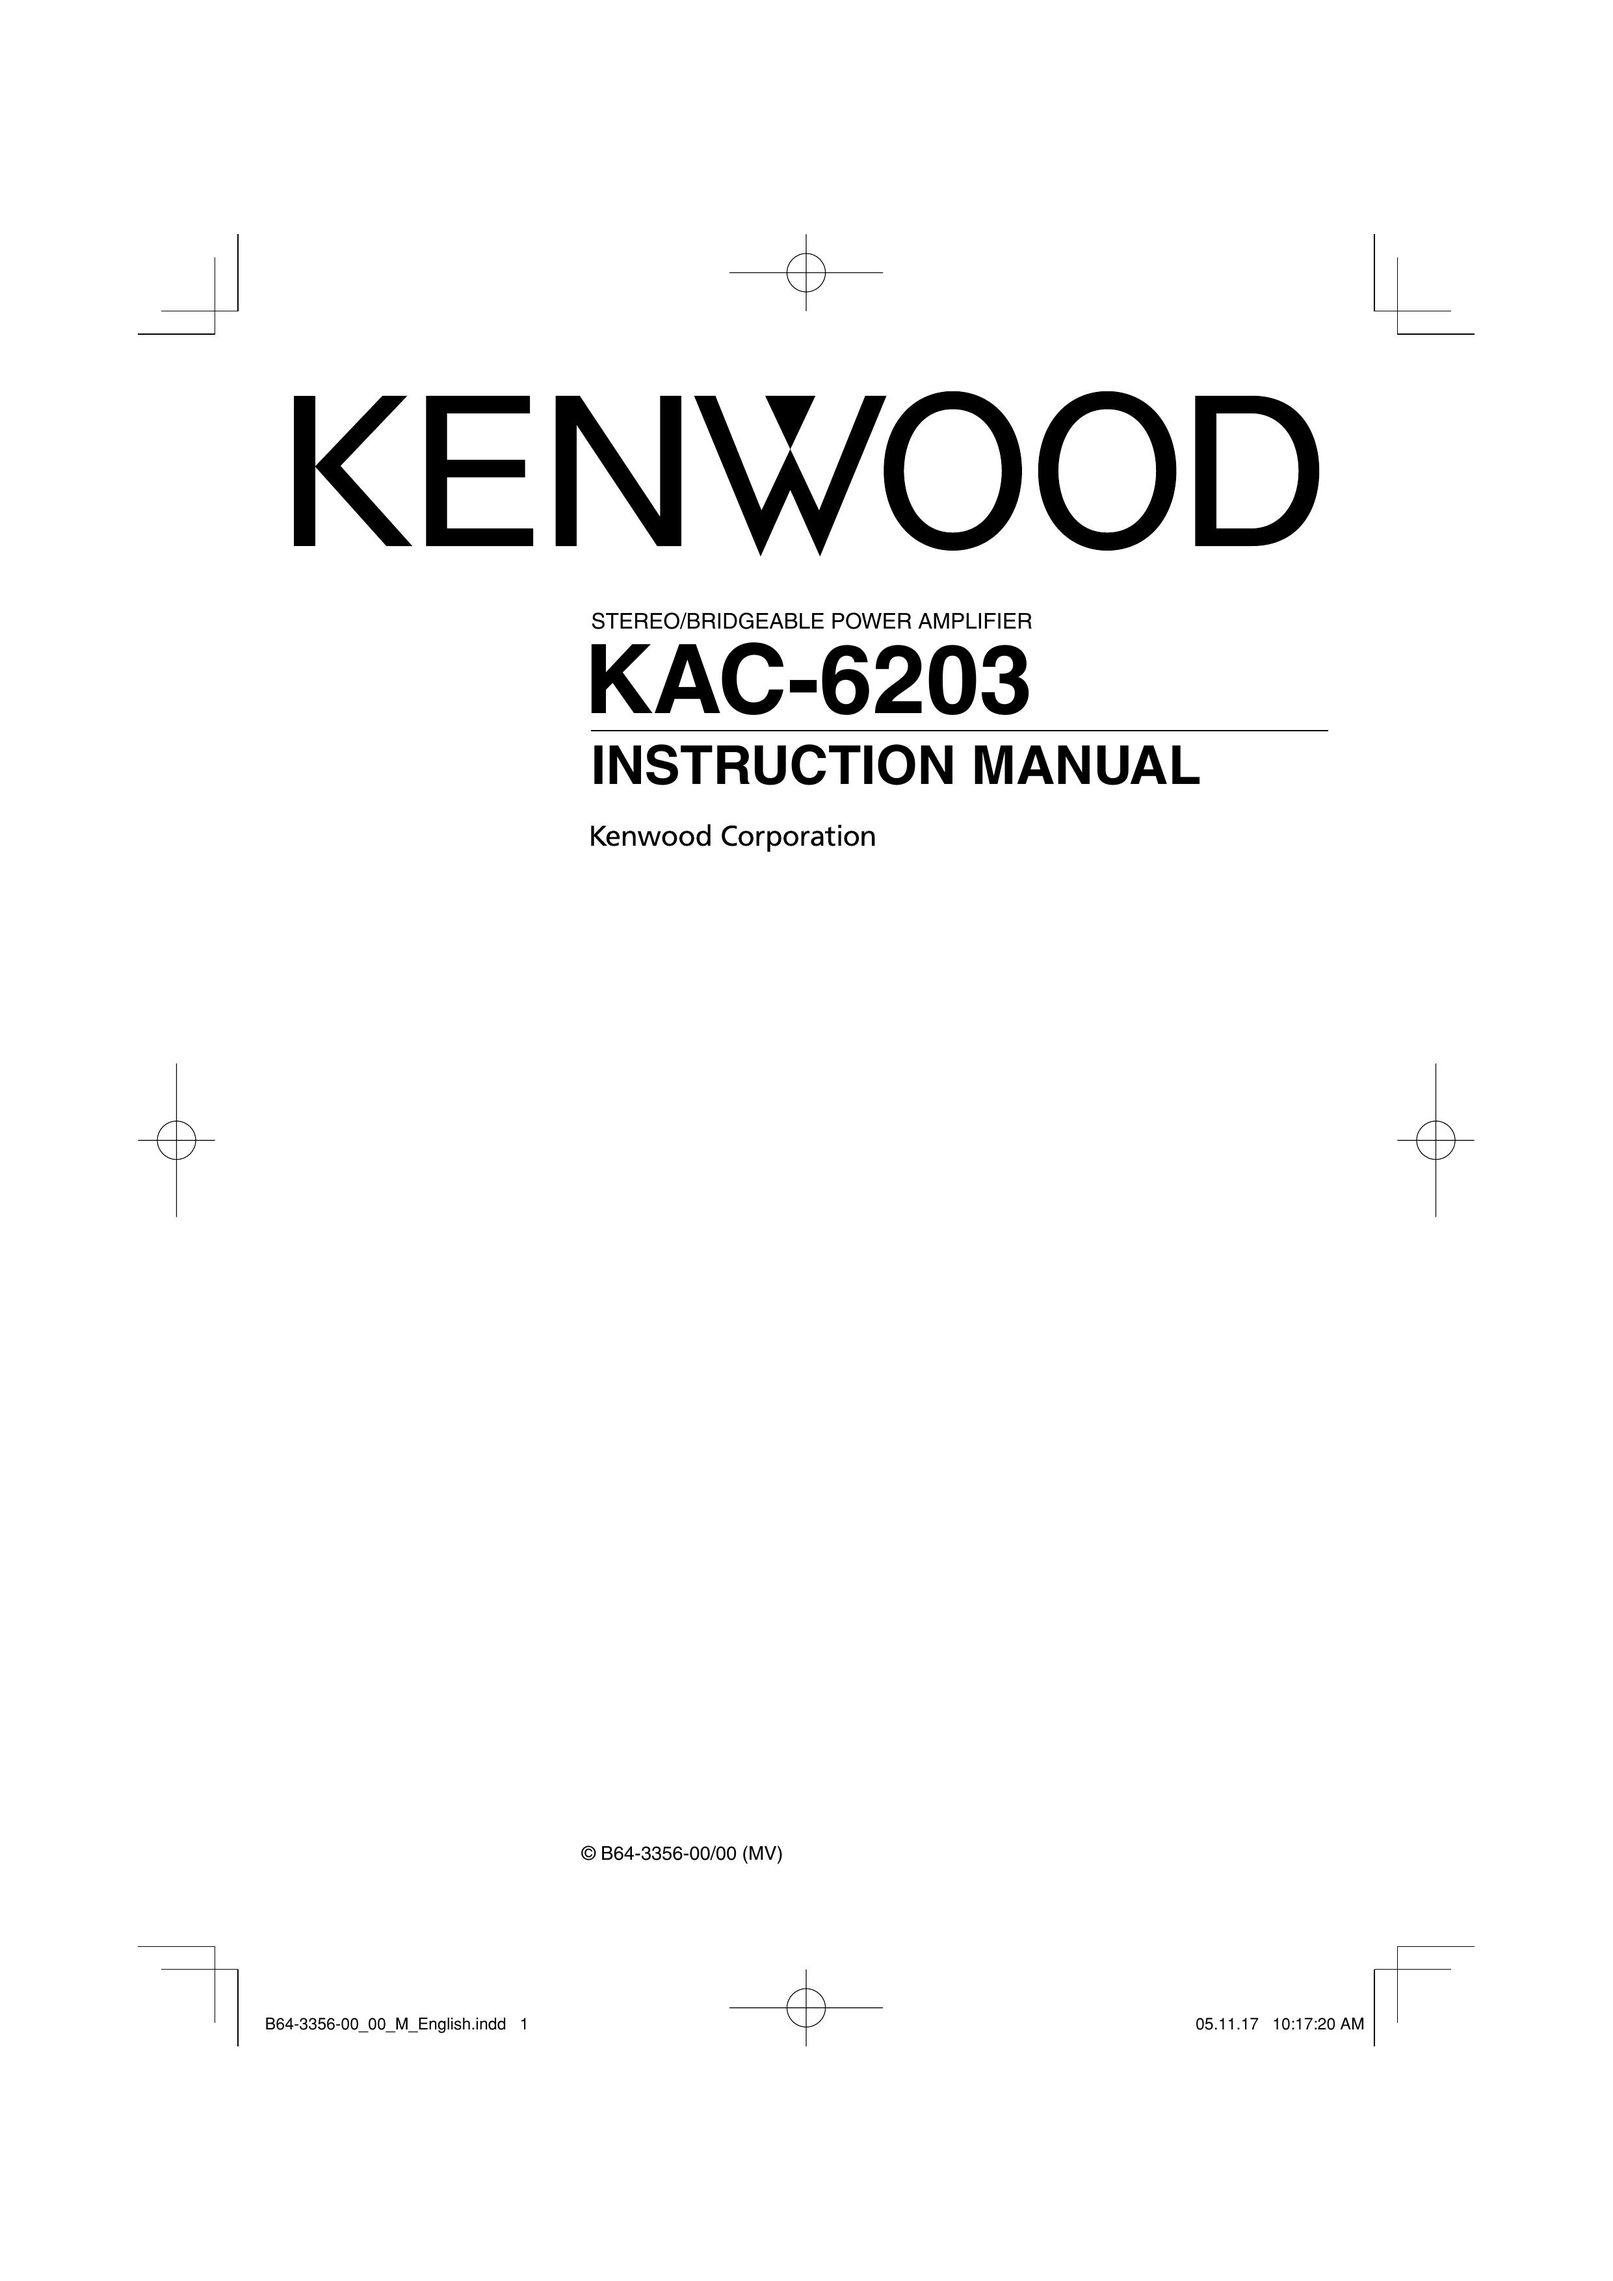 Kenwood KAC-6203 Car Amplifier User Manual